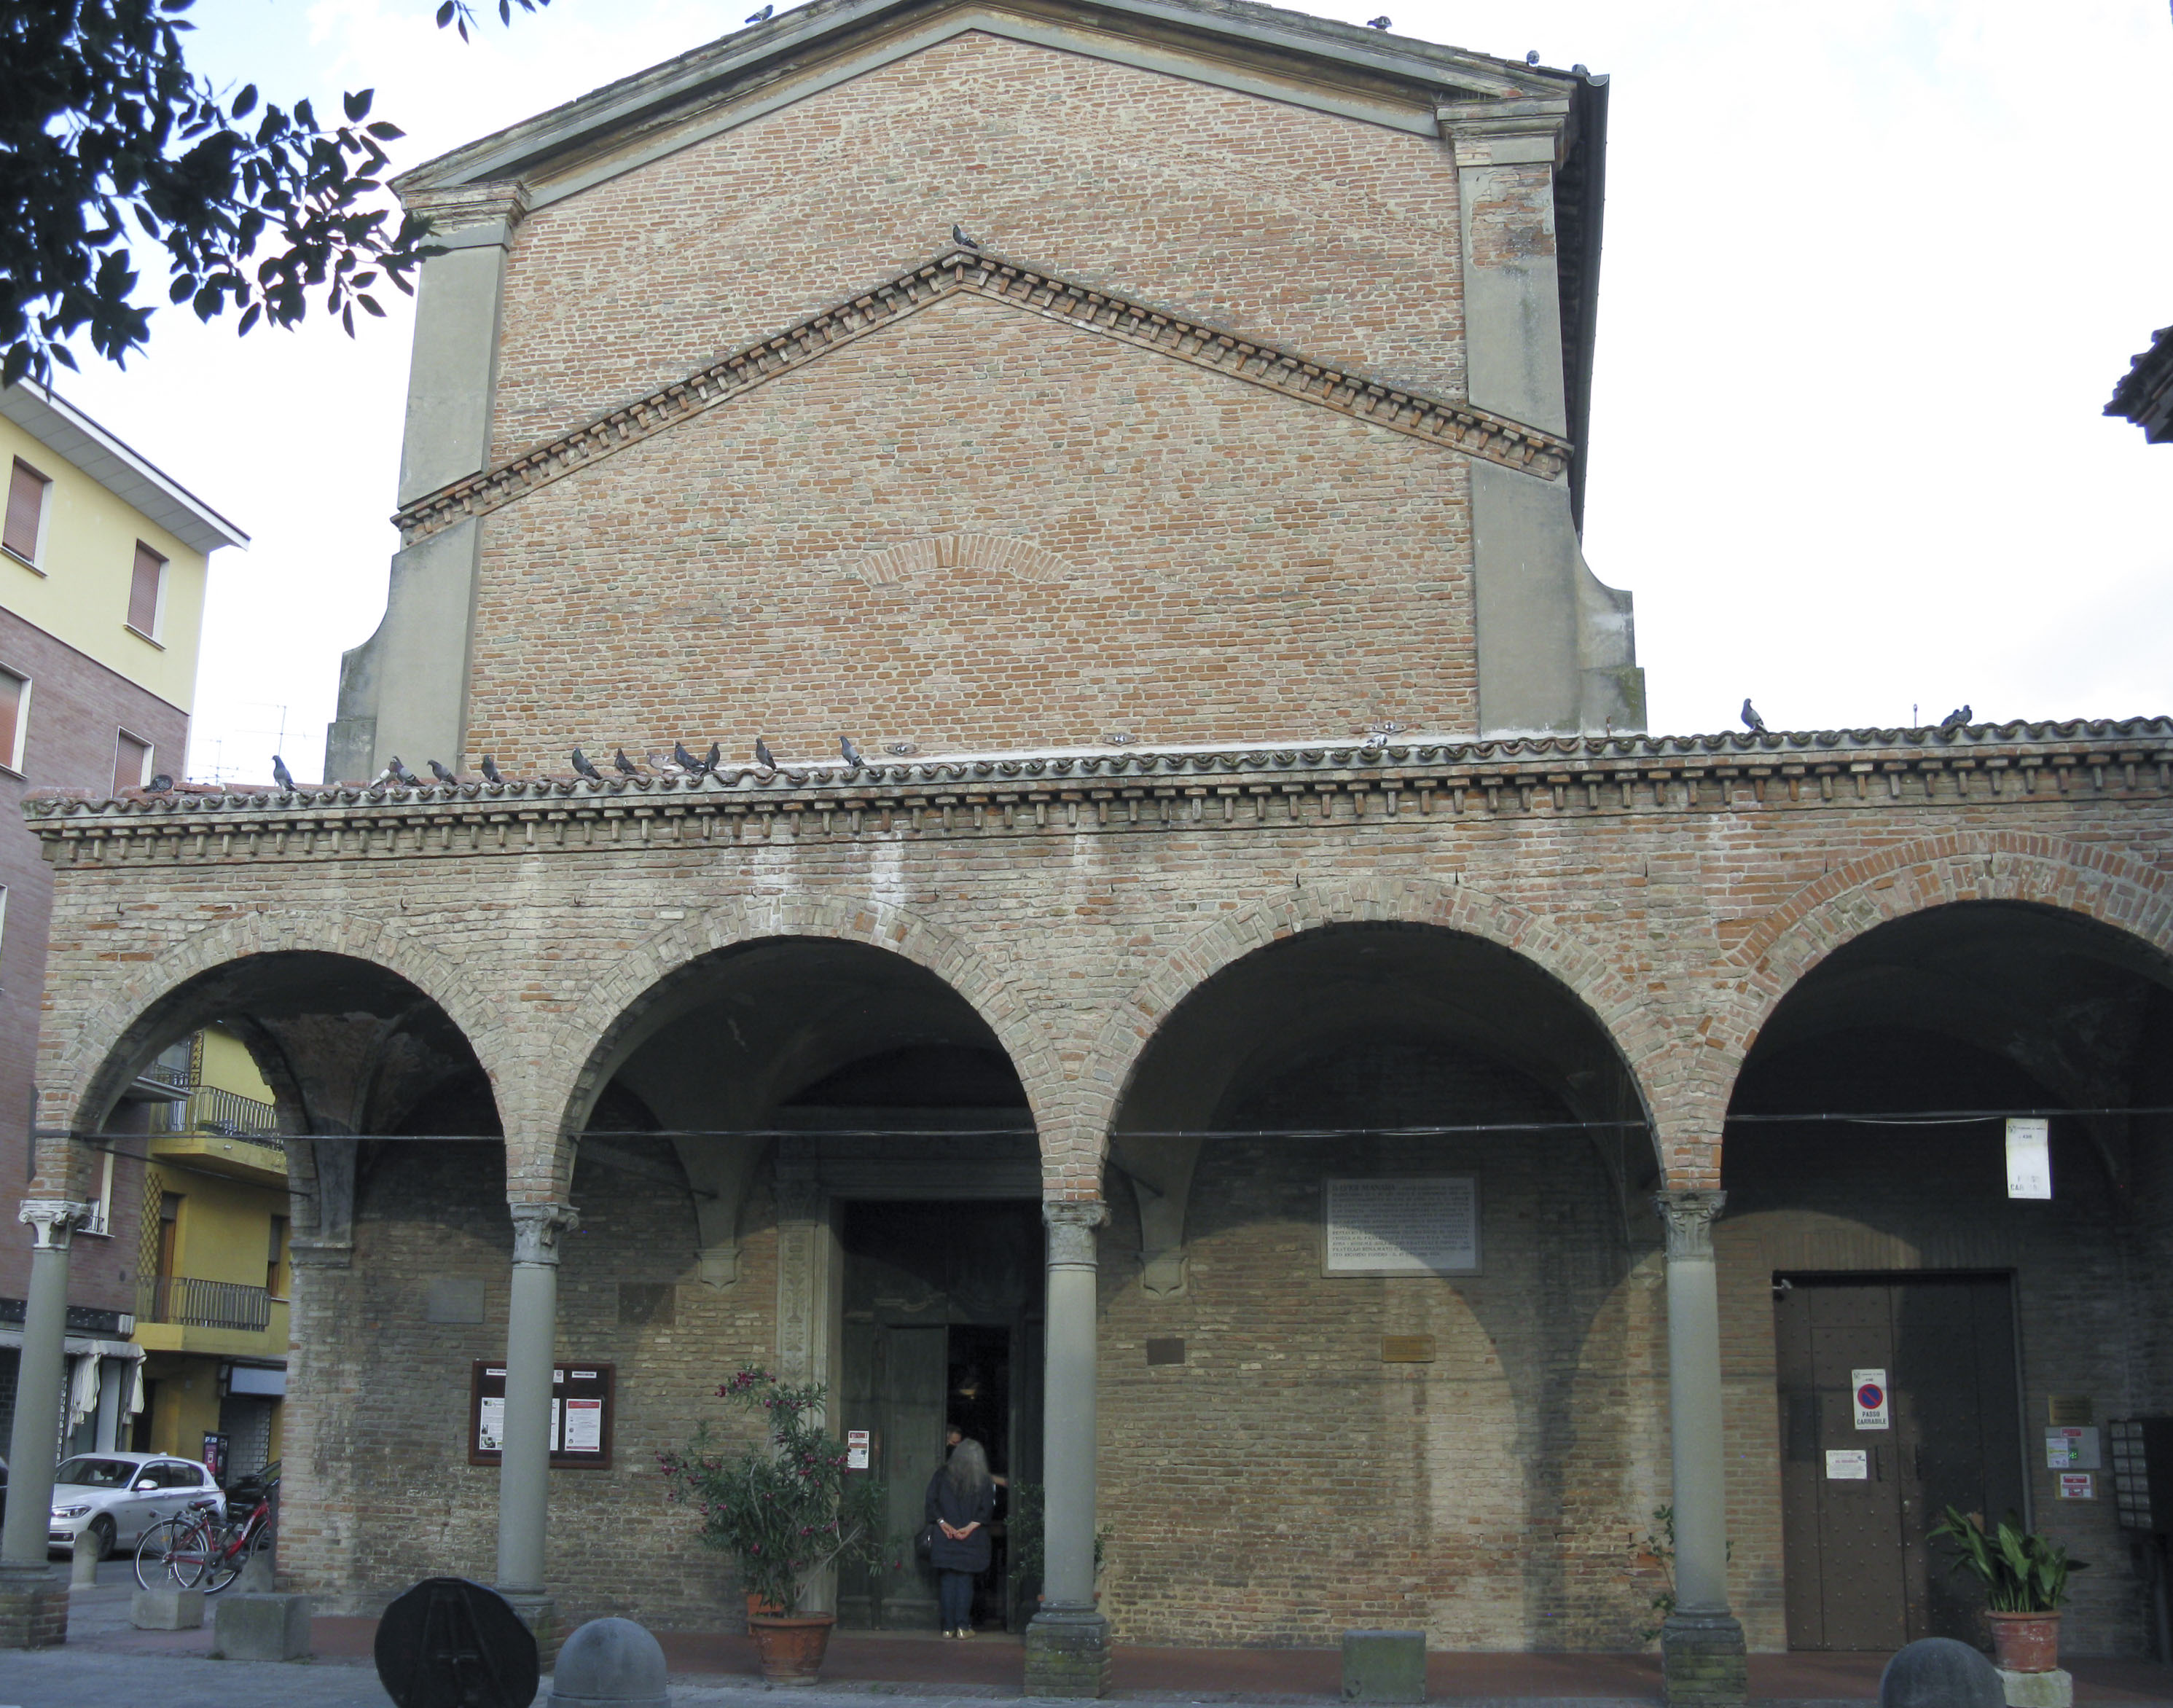 Convento di Santa Maria dei Servi (convento) - Imola (BO) 